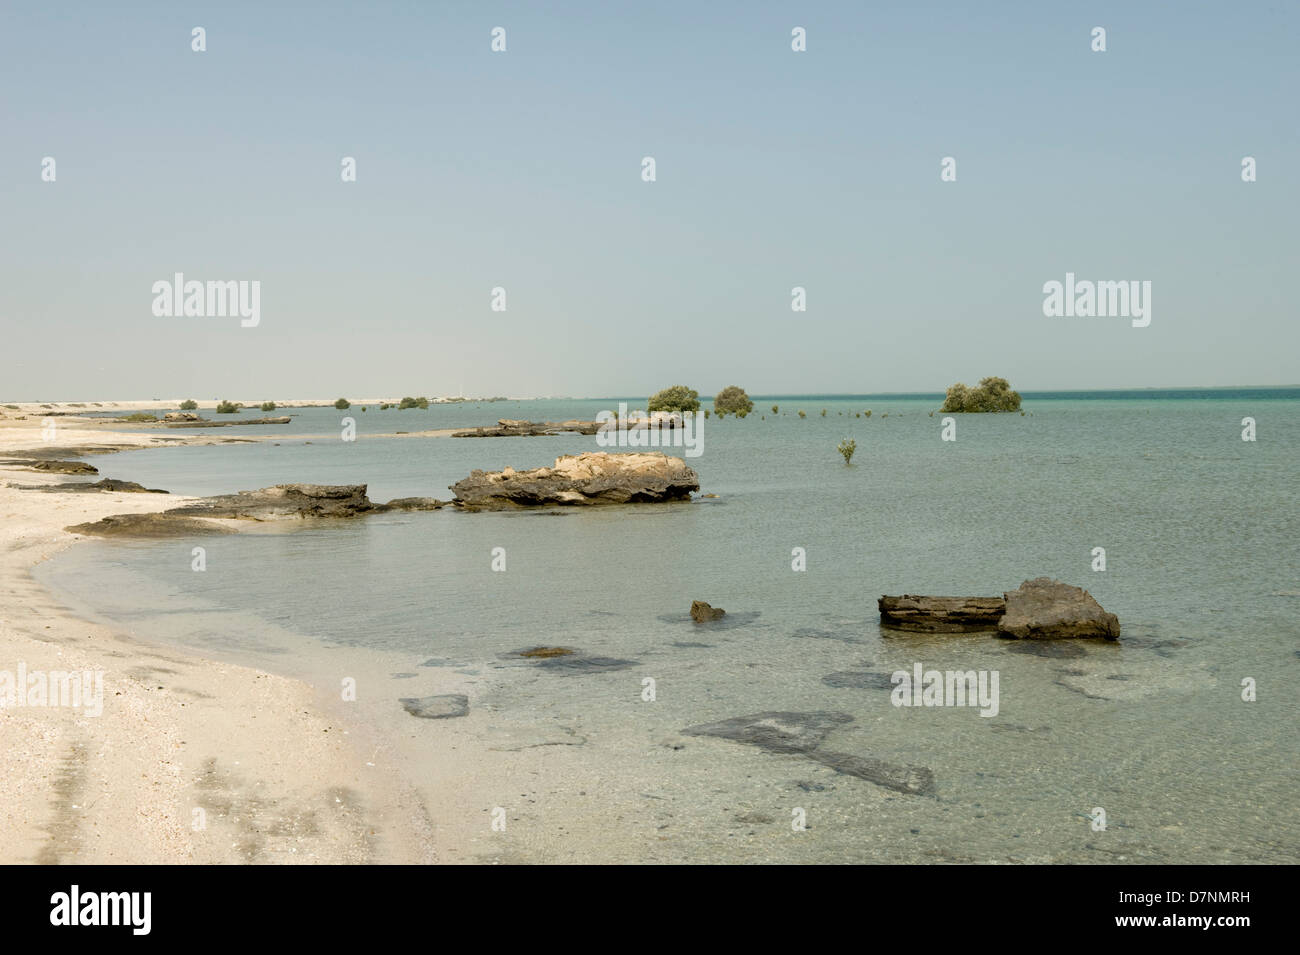 Un remoto Abu Dhabi rocas, arena de playa, con el mar en el Golfo Arábigo en alto de agua aislados y maduros y jóvenes manglares gris Foto de stock